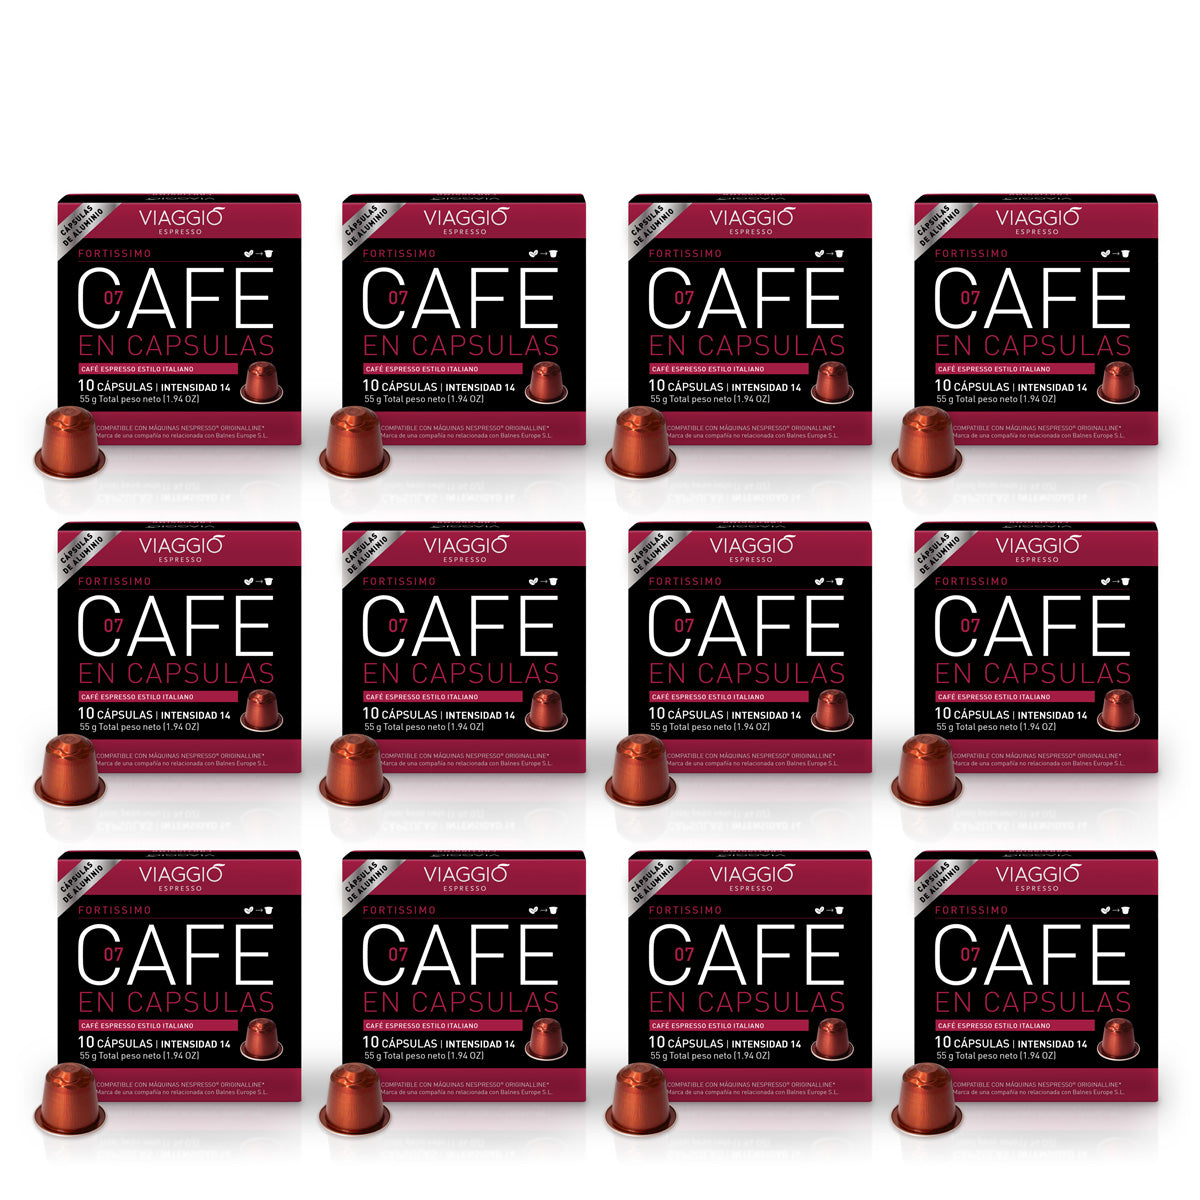 Selección Fortissimo | 120 Cápsulas de Café compatibles con Nespresso®